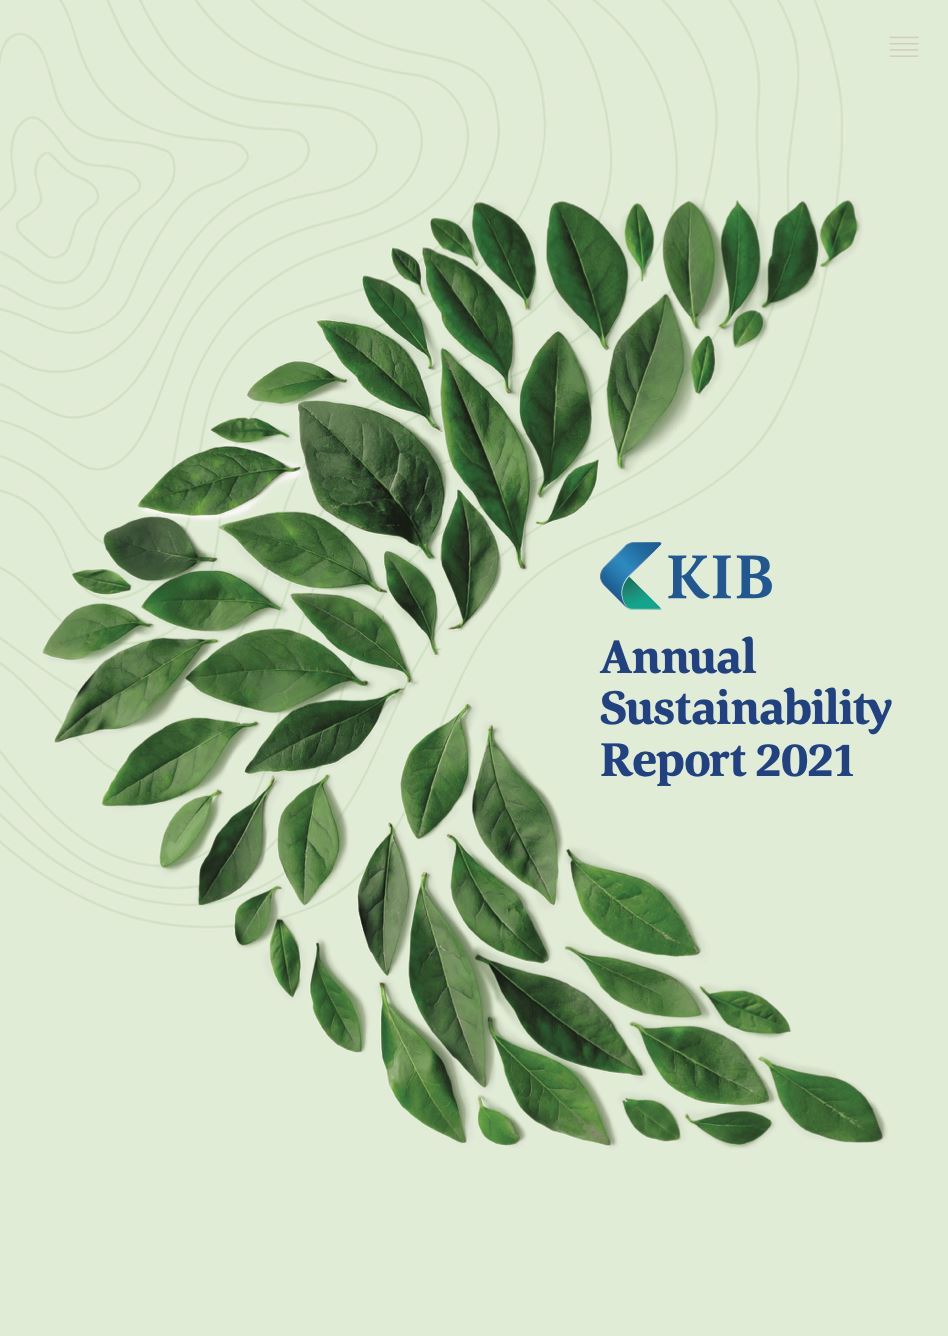 KIB يصدر تقريره السنوي الأول للاستدامة